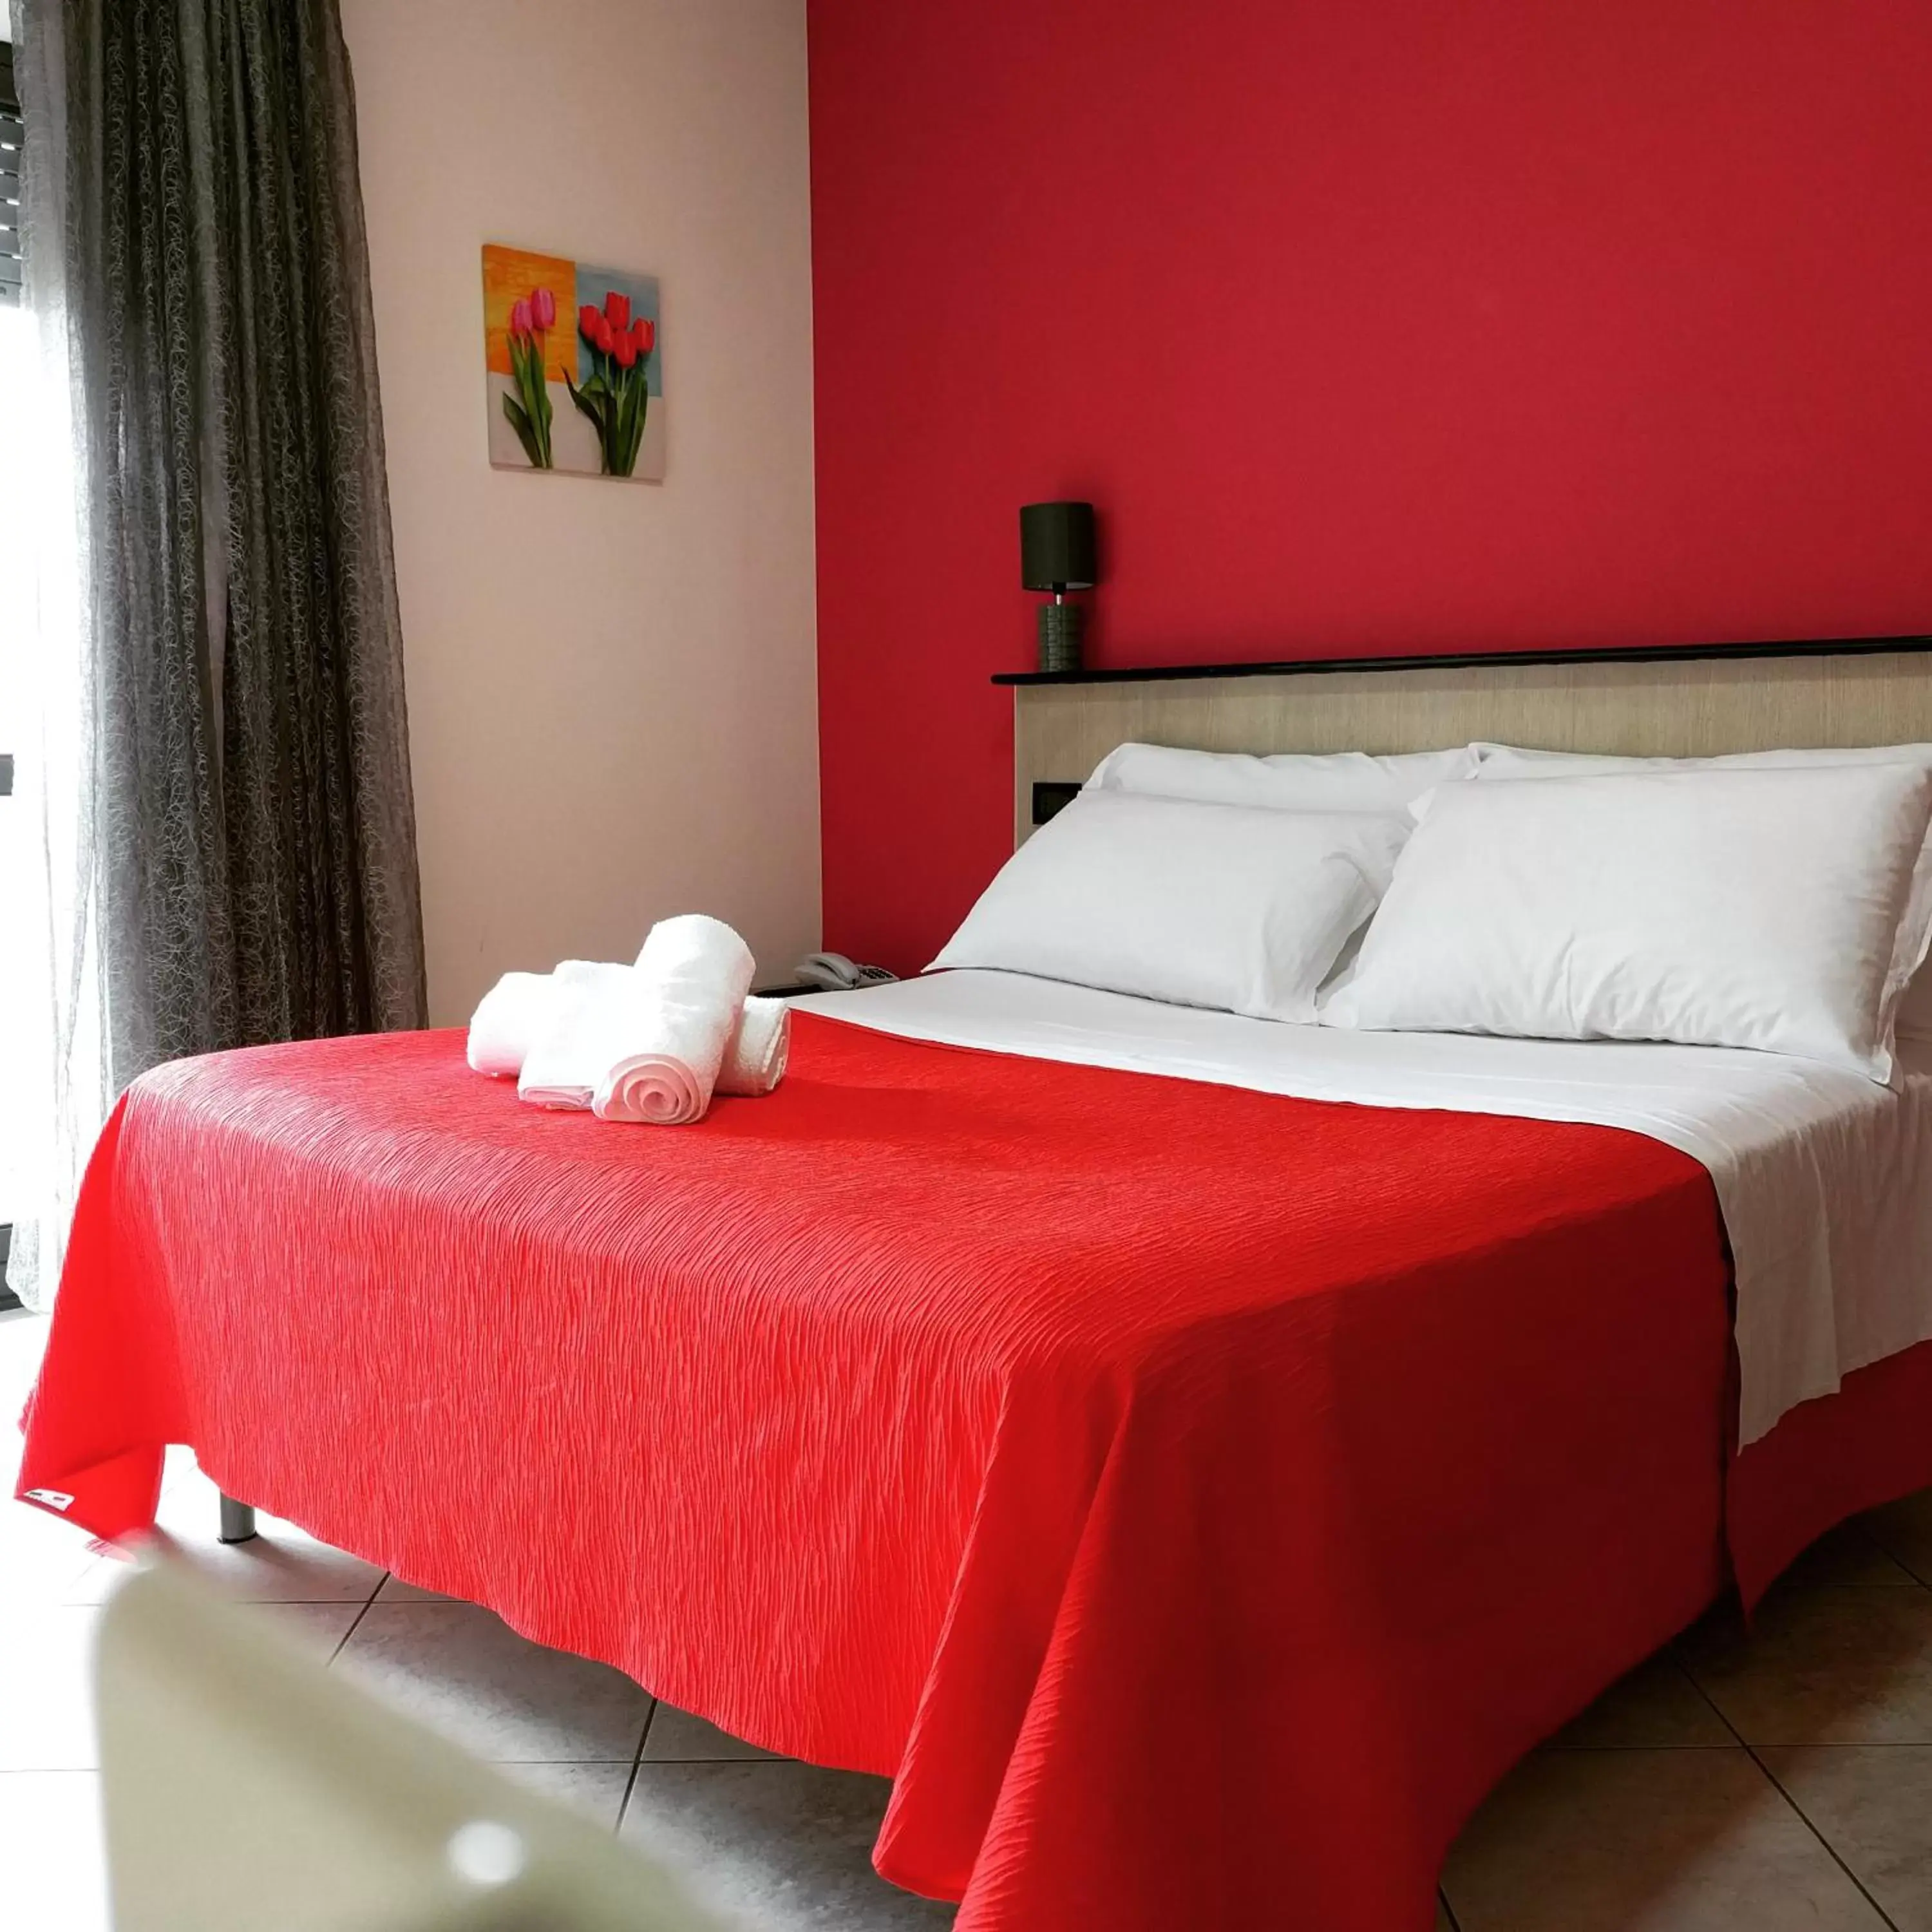 Bed in Le Ceramiche - Hotel Residence ed Eventi